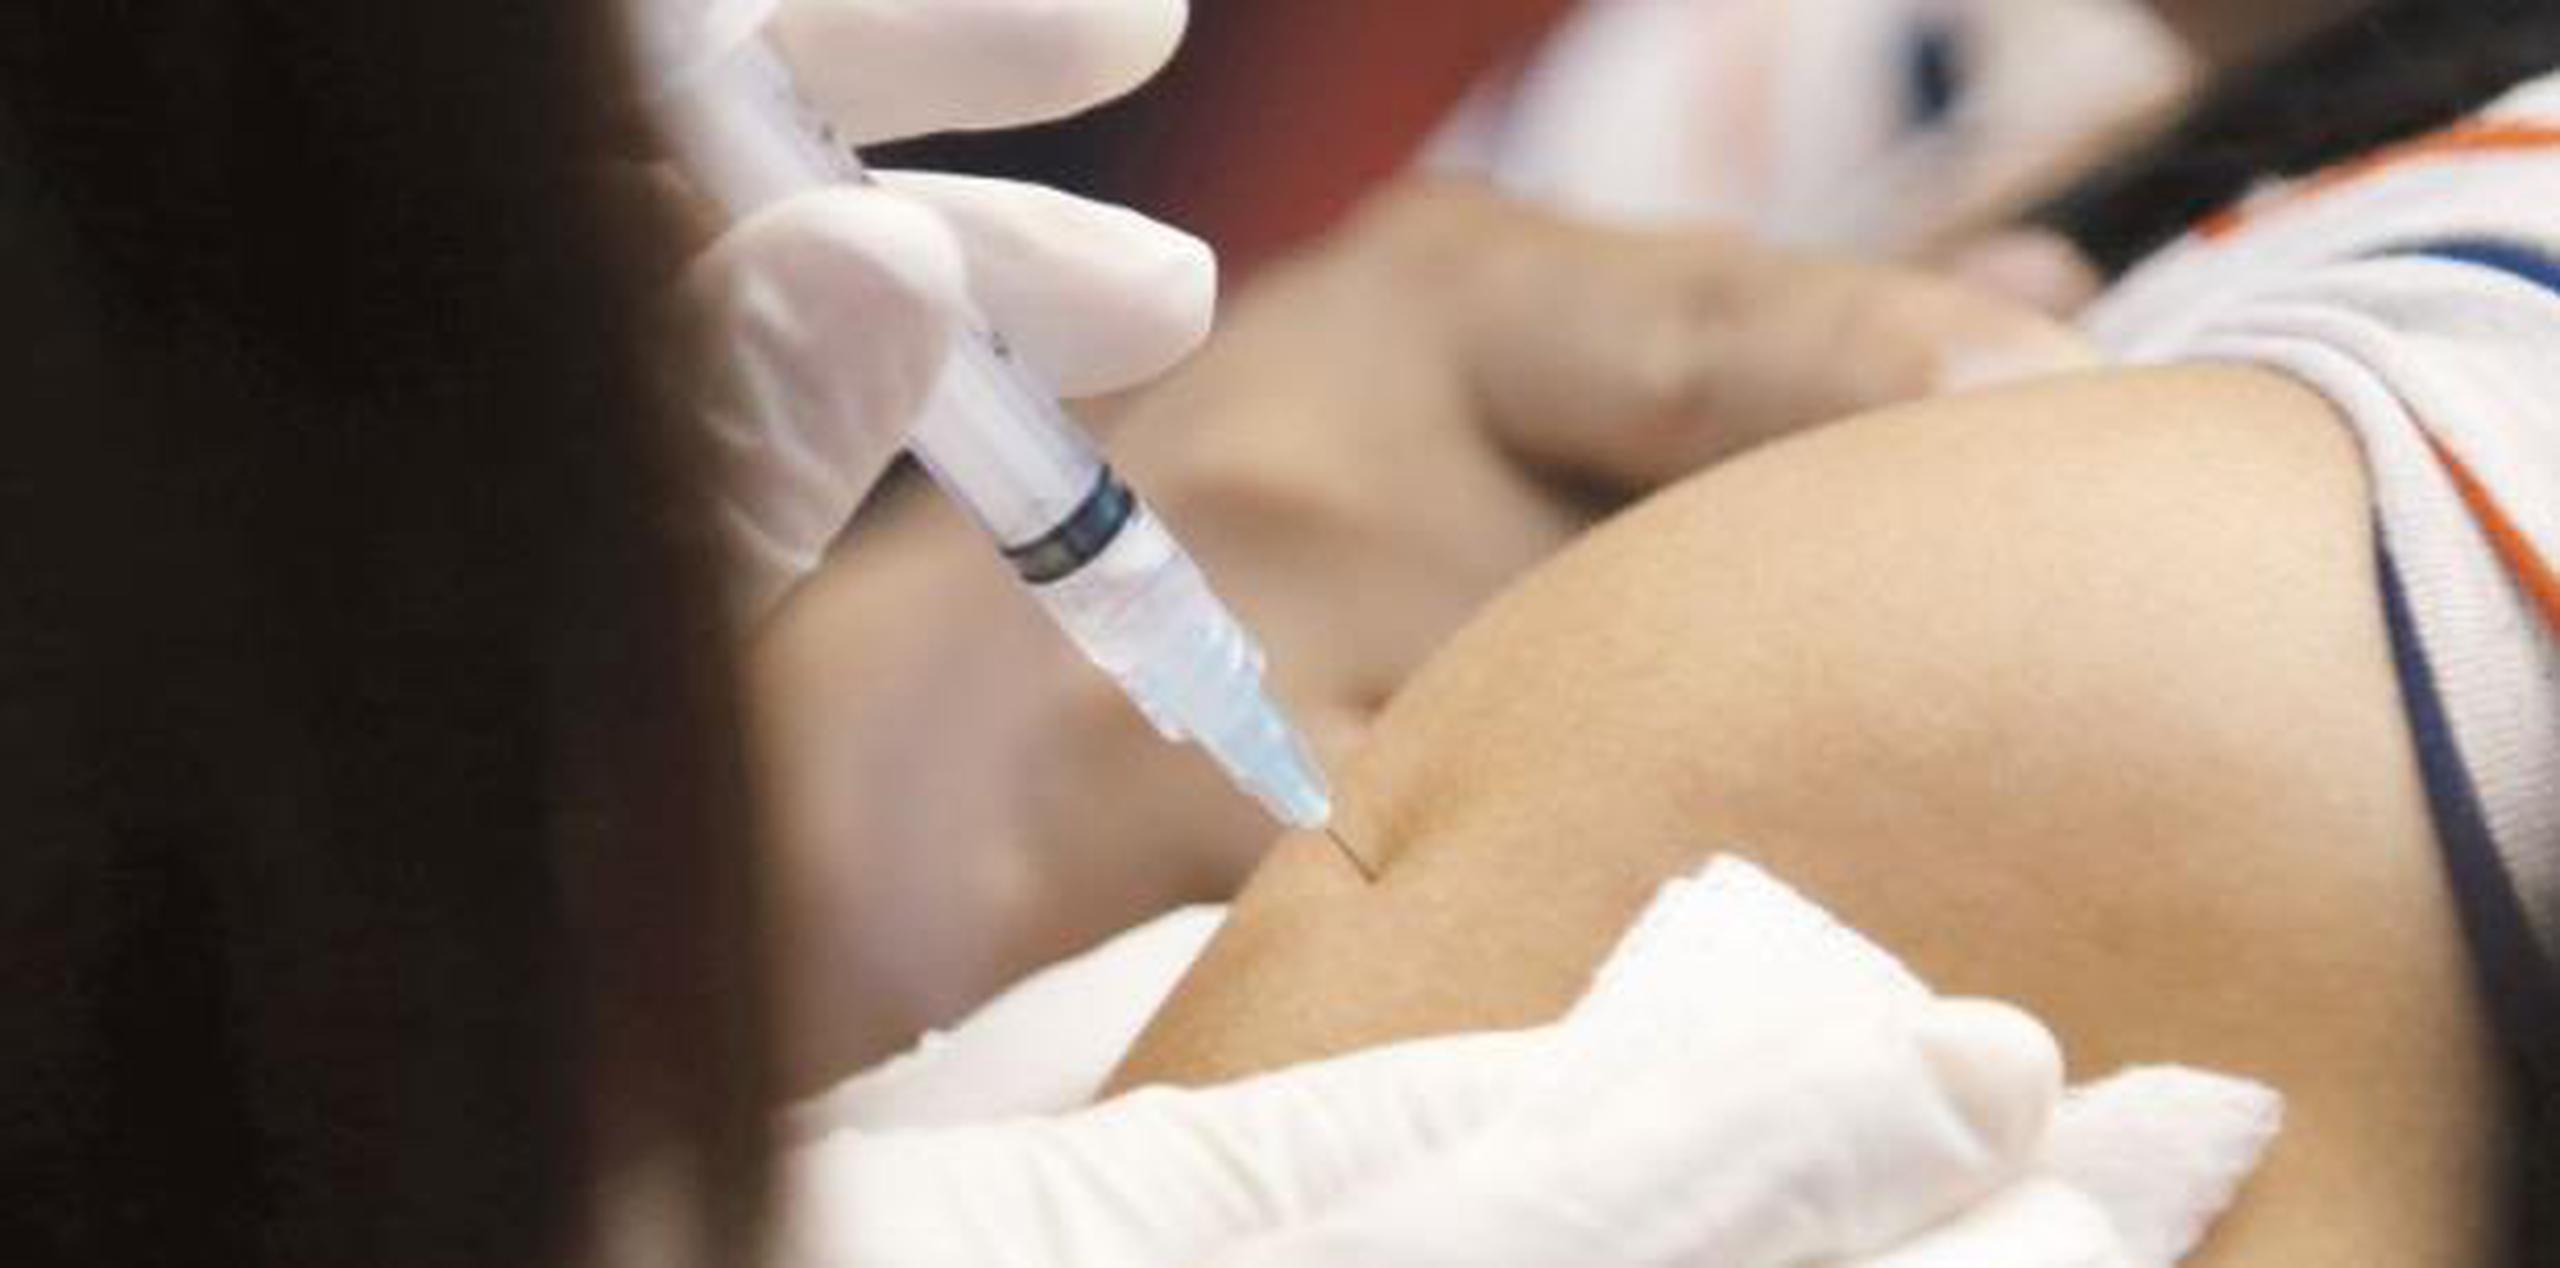 Para la clase médica, el dilema en contra de las vacunas no tiene peso científico. (Archivo)